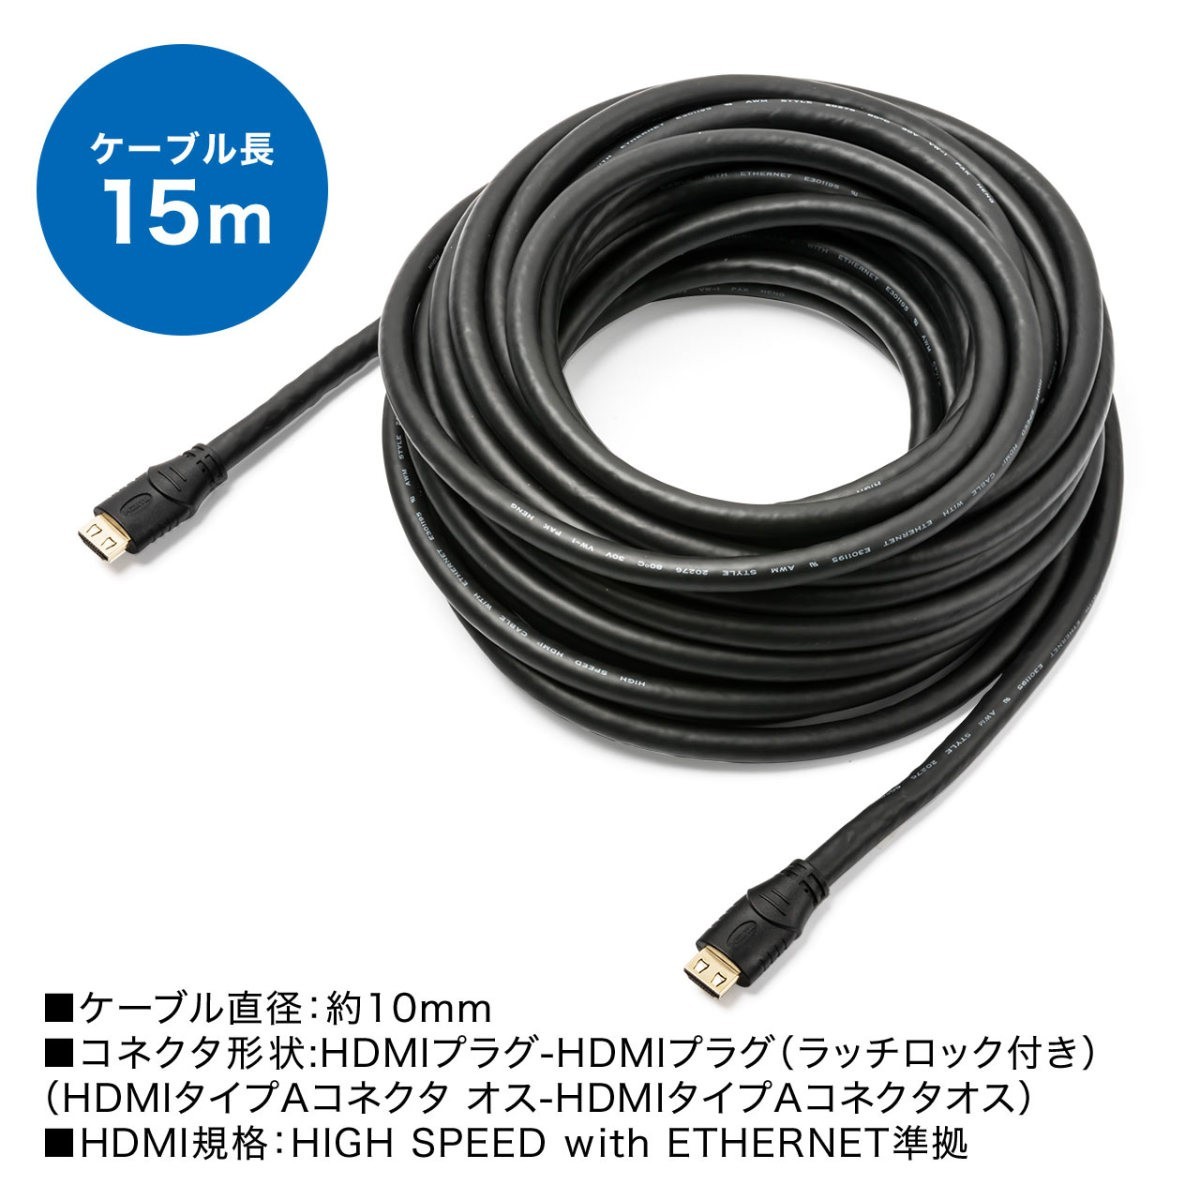 HDMIケーブル ロング ケーブル HDMI 15m 抜けにくい ラッチ付き 抜け